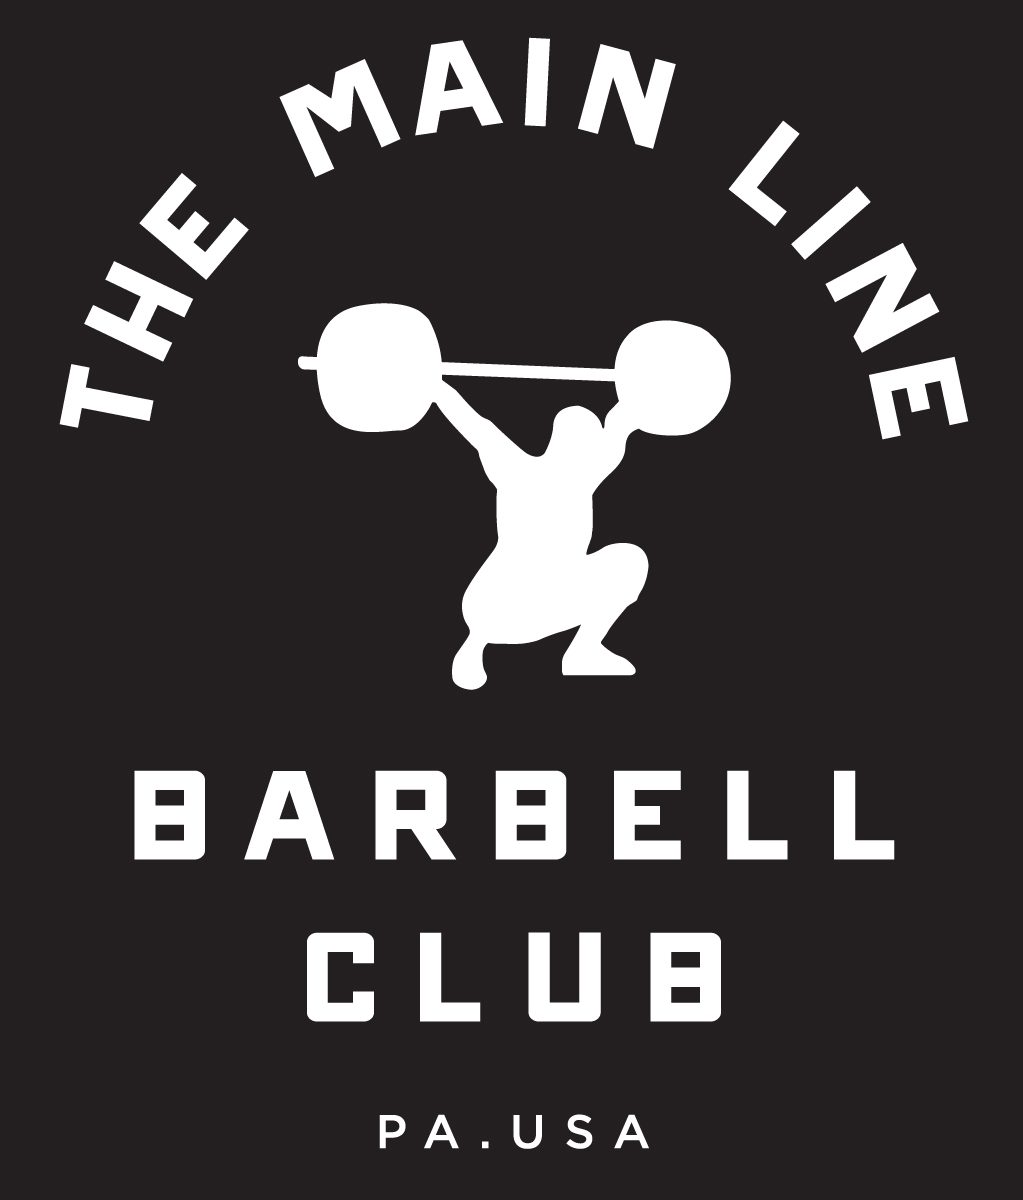 Week of 6.13.16 Barbell Club